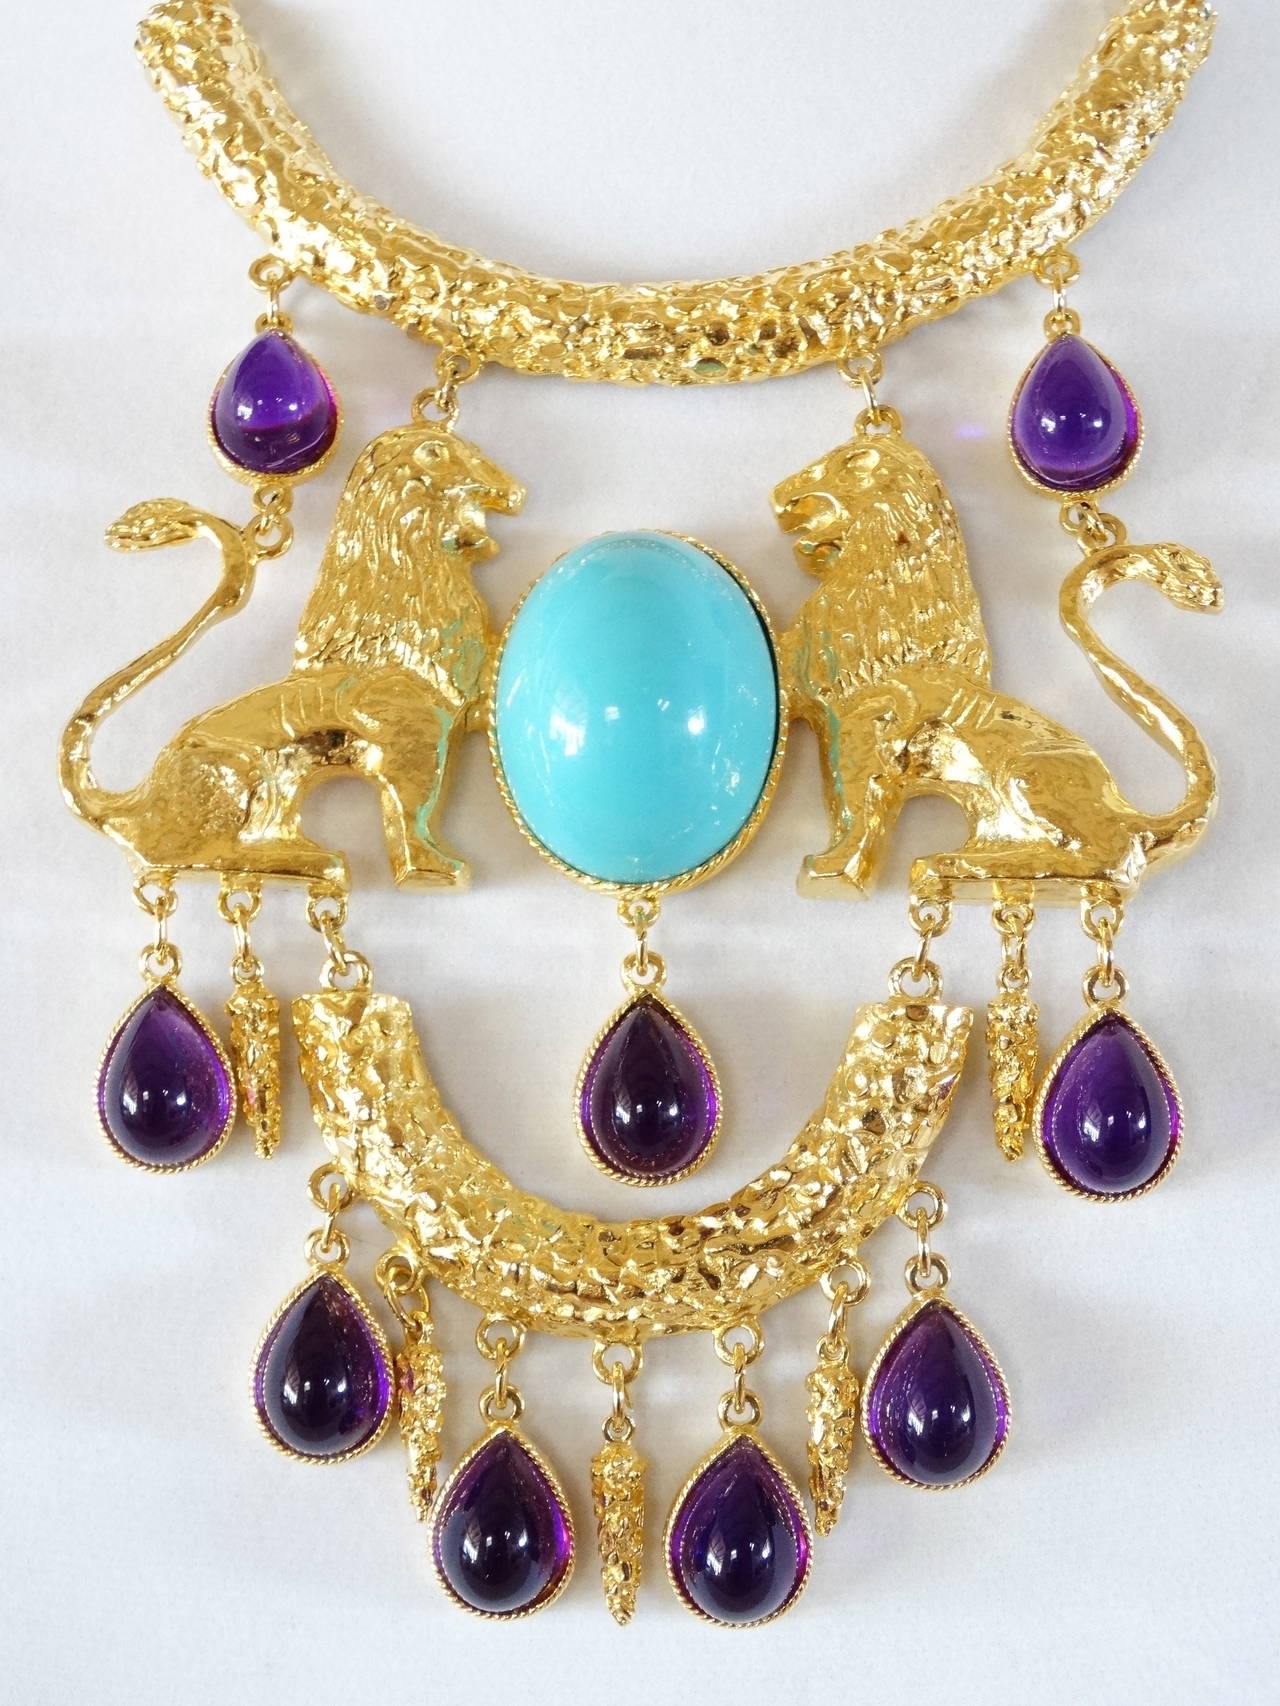 1970's jewelry